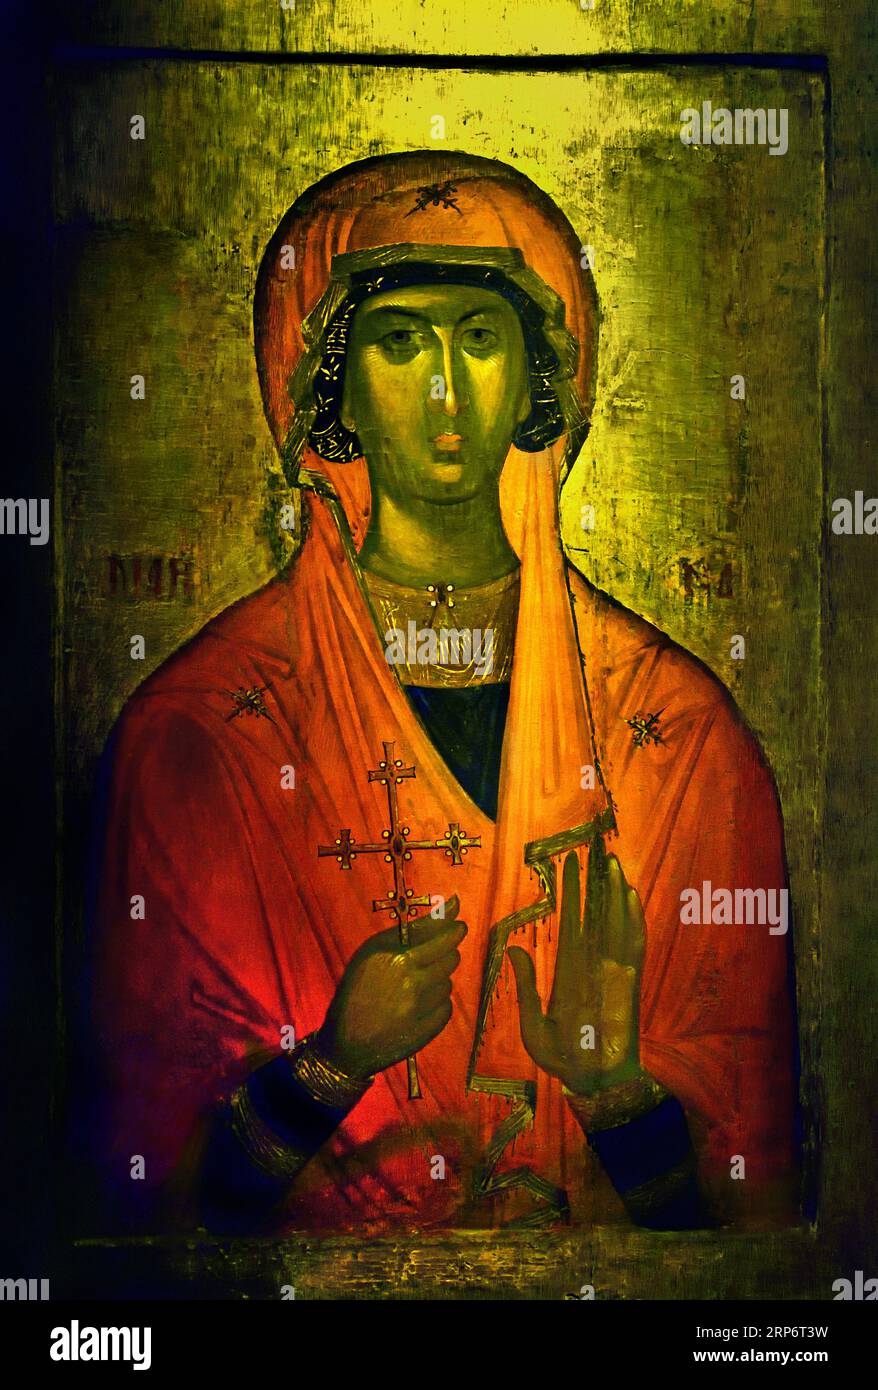 Saint Marina Icon, geschaffen auf Kreta, Künstler aus dem 14. Bis 15. Jahrhundert, der eng mit Werkstätten verbunden ist, Konstantinopel. Athen Griechenland Byzantinisches Museum Orthodoxe Kirche Griechisch ( Icon ) Stockfoto